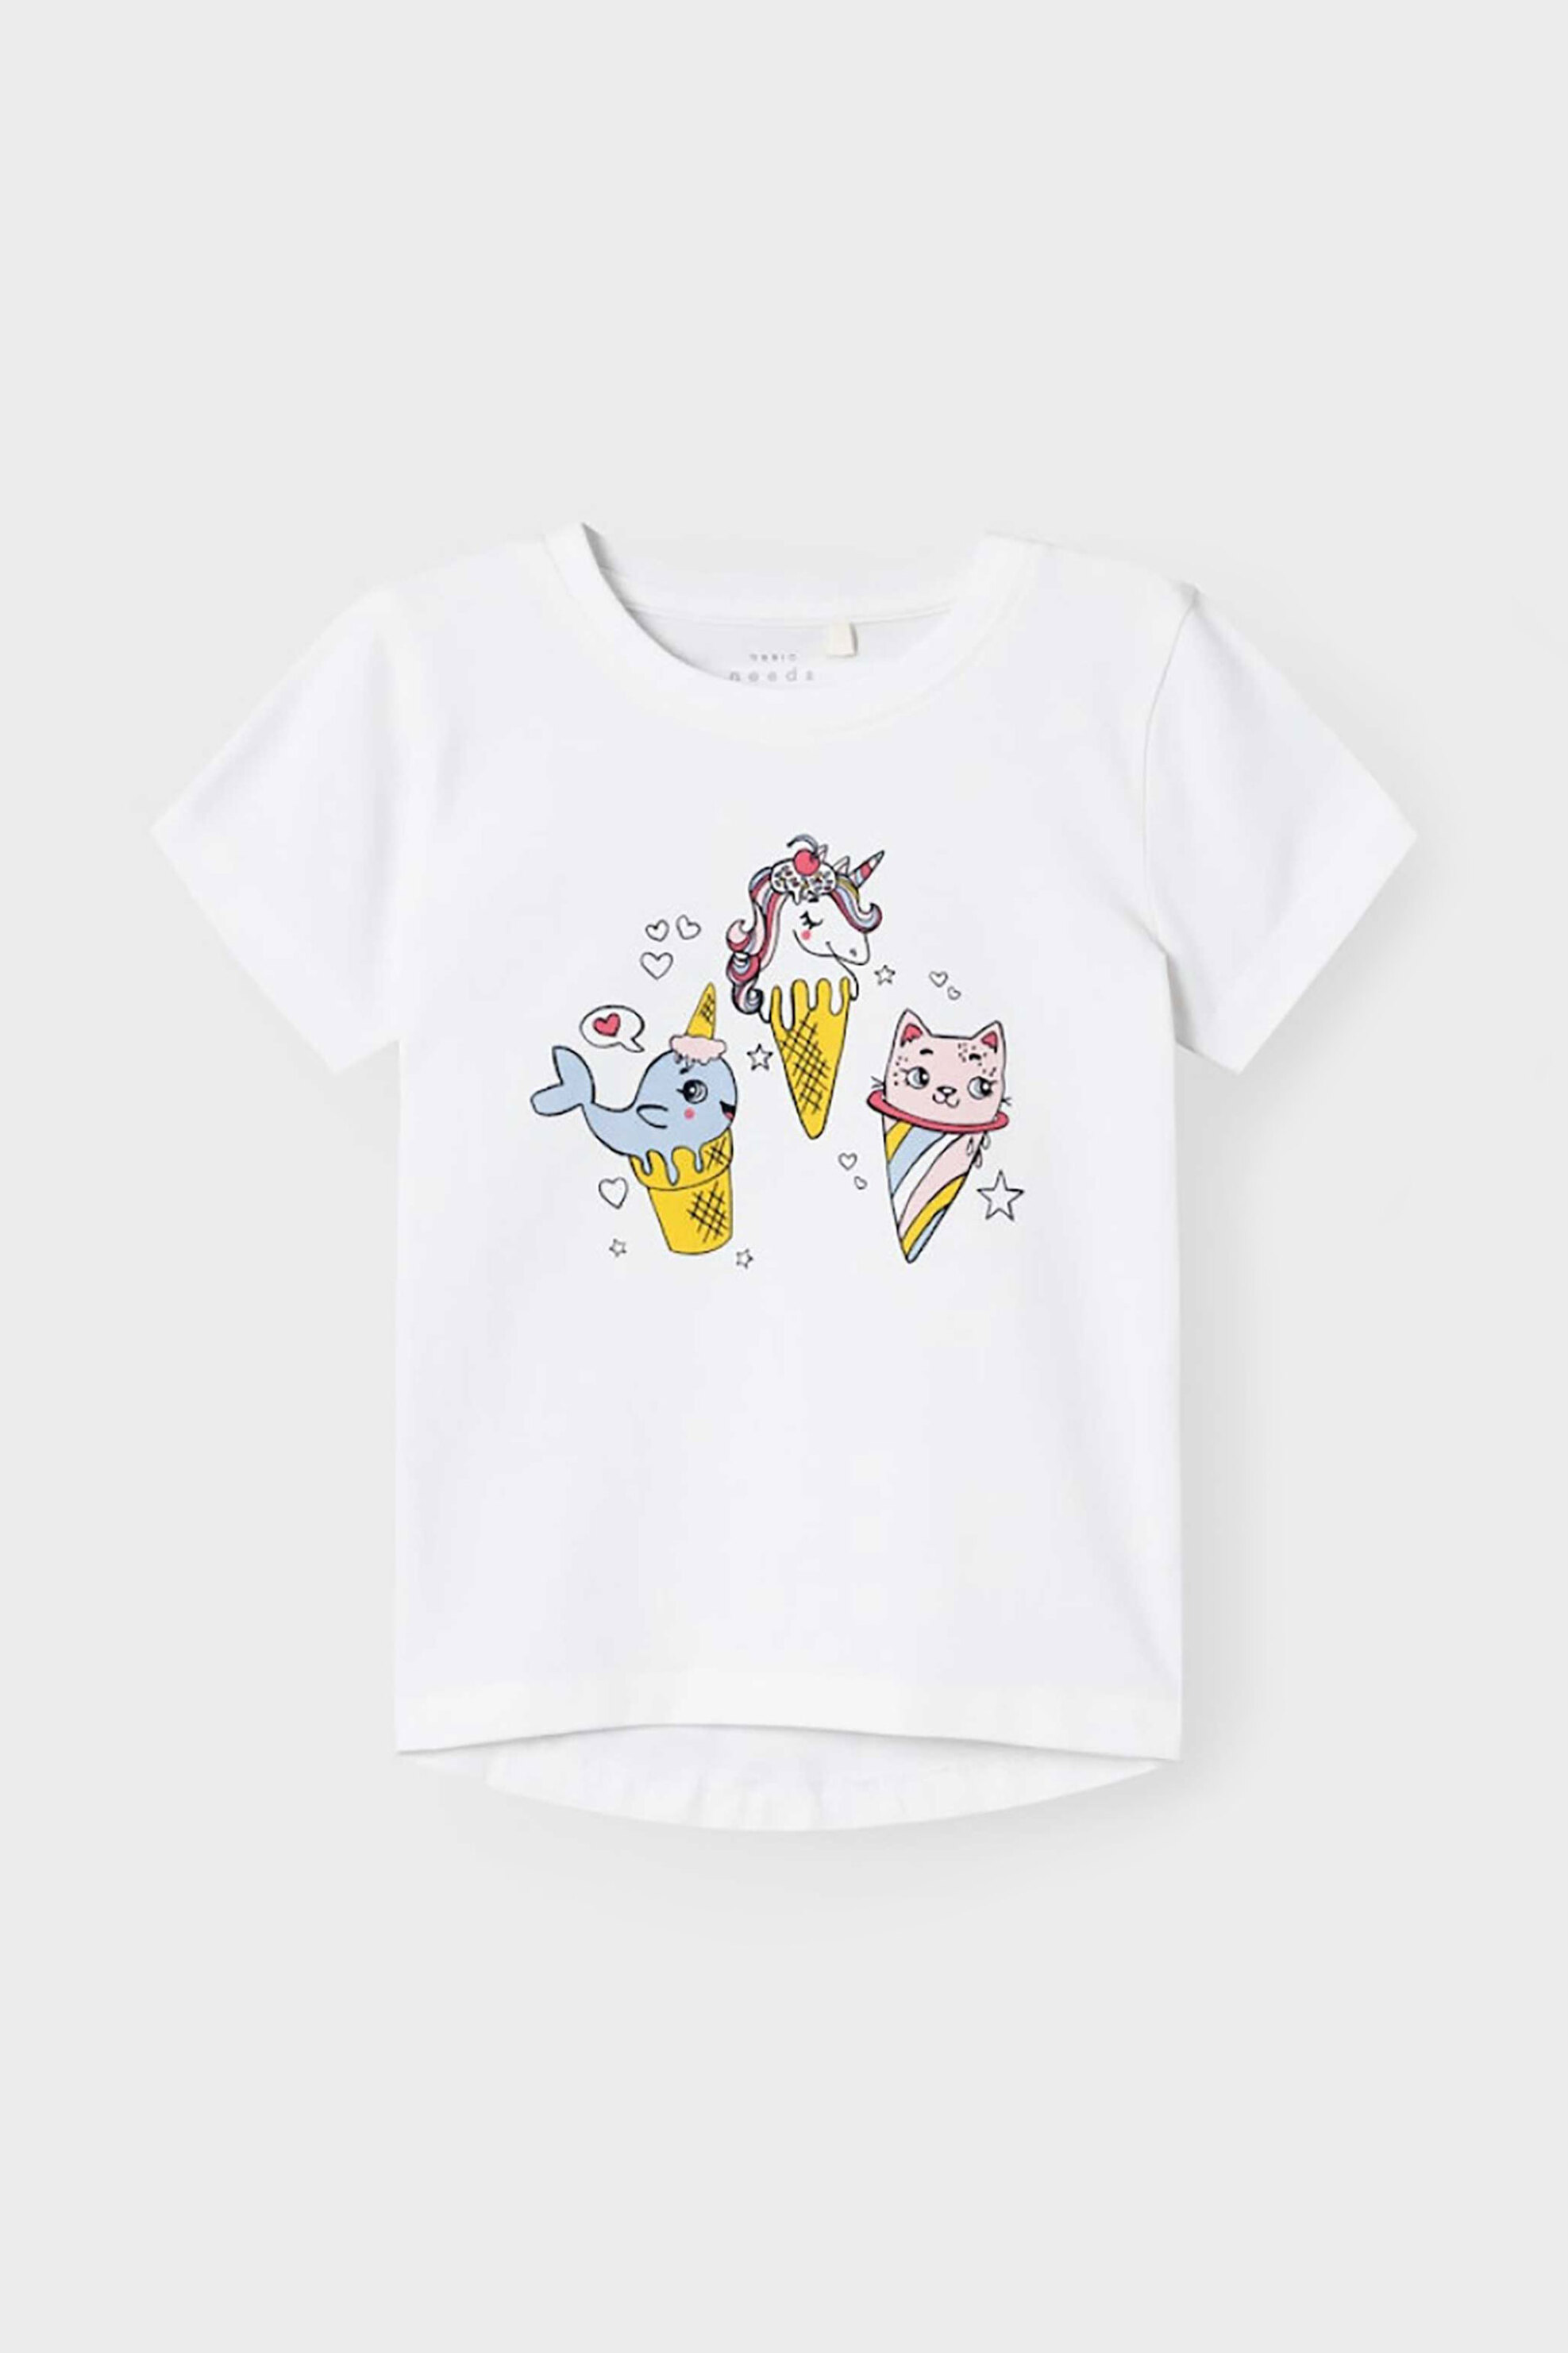 Παιδικά Ρούχα, Παπούτσια & Παιχνίδια > Παιδικά Ρούχα & Αξεσουάρ για Κορίτσια > Παιδικές Μπλούζες για Κορίτσια > Παιδικά T-Shirts για Κορίτσια Name It παιδικό T-shirt με graphic print Regular Fit - 13228145 Λευκό